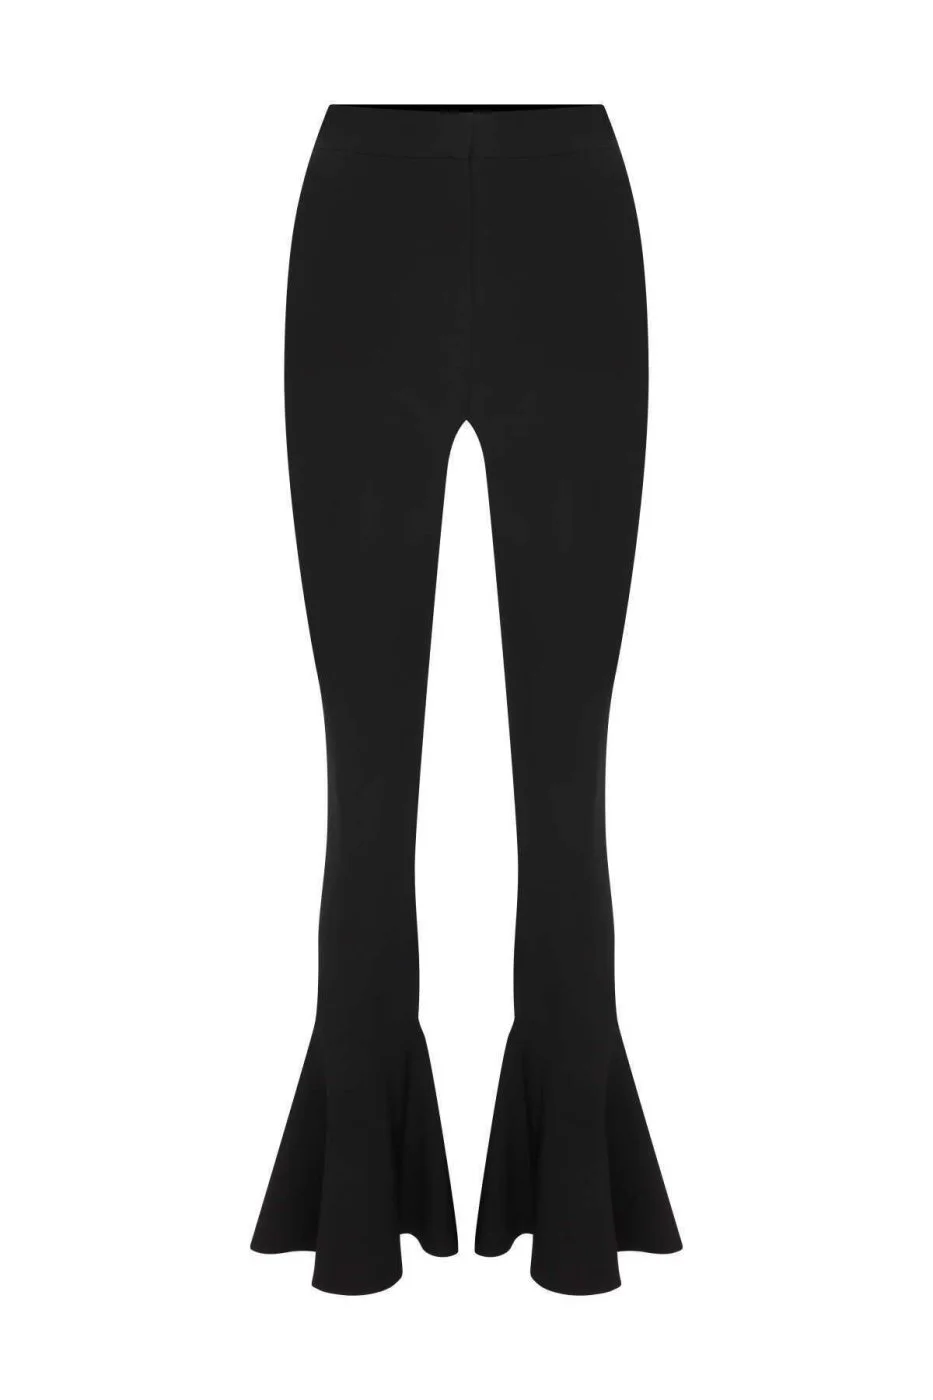  Düşük Bel Volanlı Paça Detaylı Likralı Krep Kadın Pantolon Siyah - 1